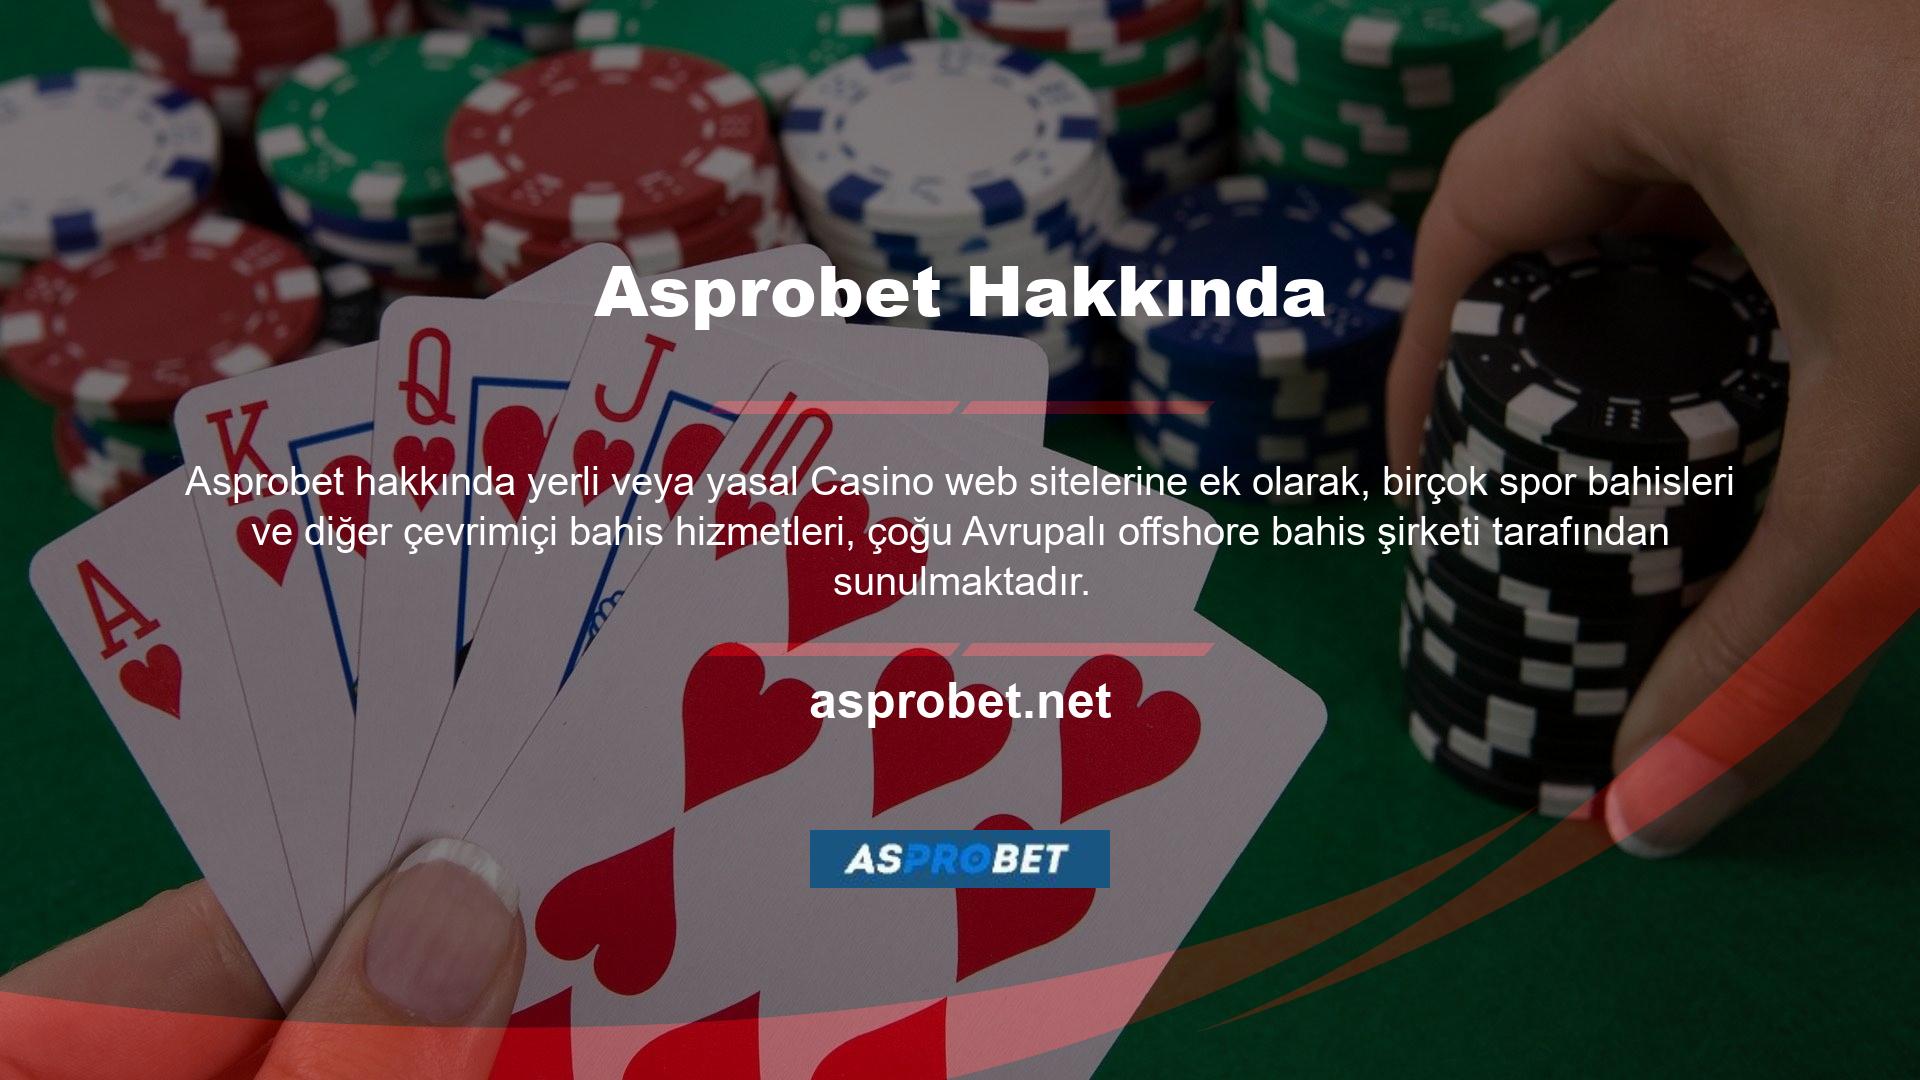 Ülkemizde Asprobet adında bir oyun sitesi bulunmaktadır